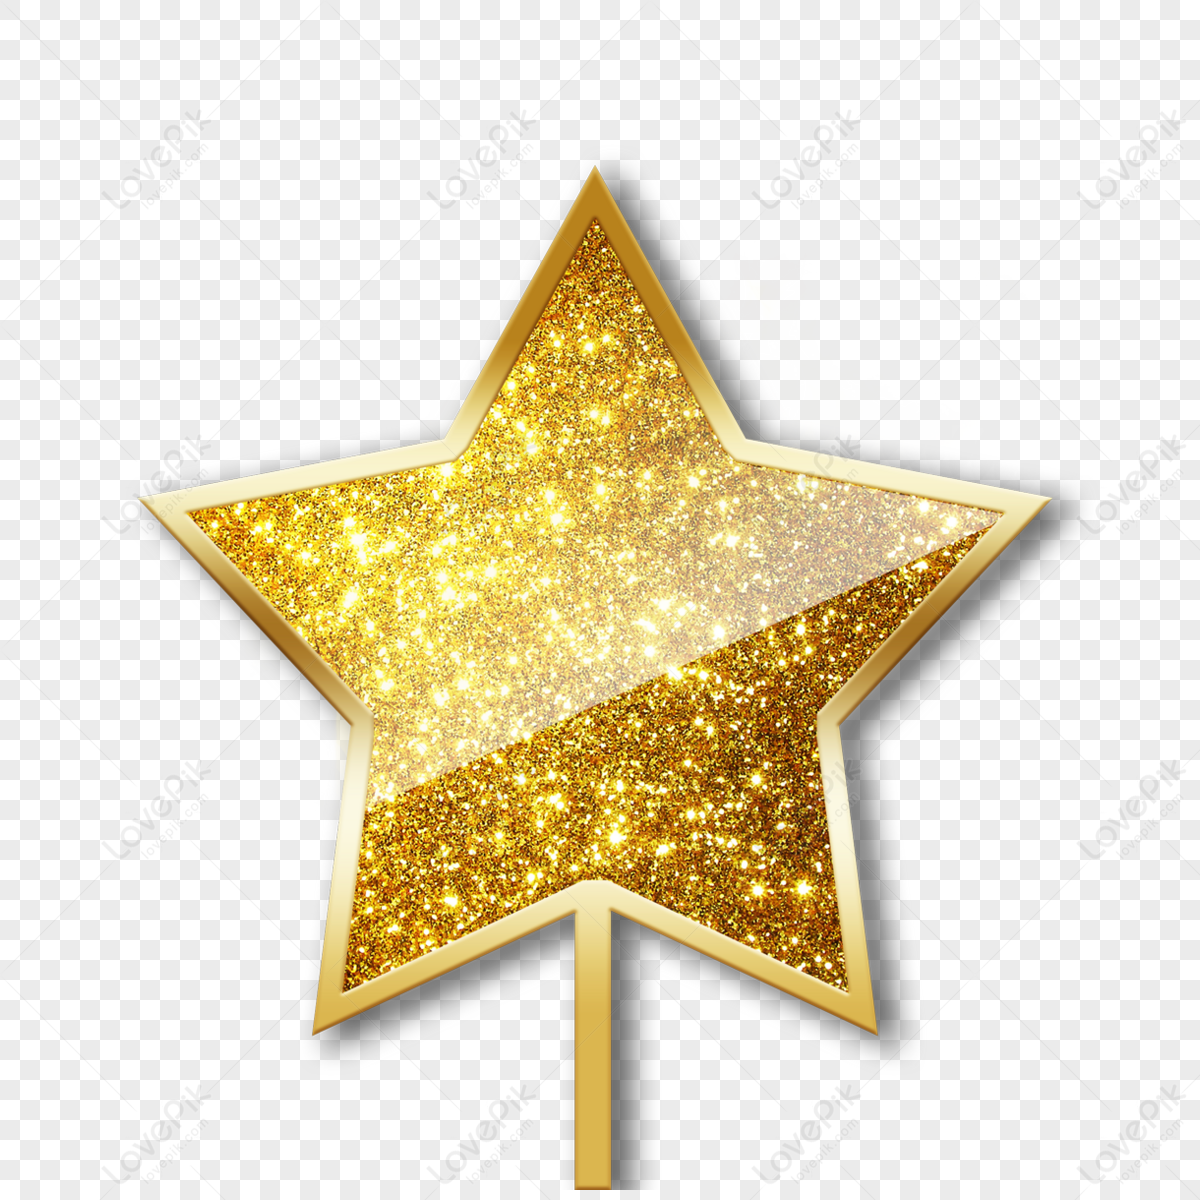 Golden Star Creative Hand Painted Hollow Gold Stars, Stars, Golden